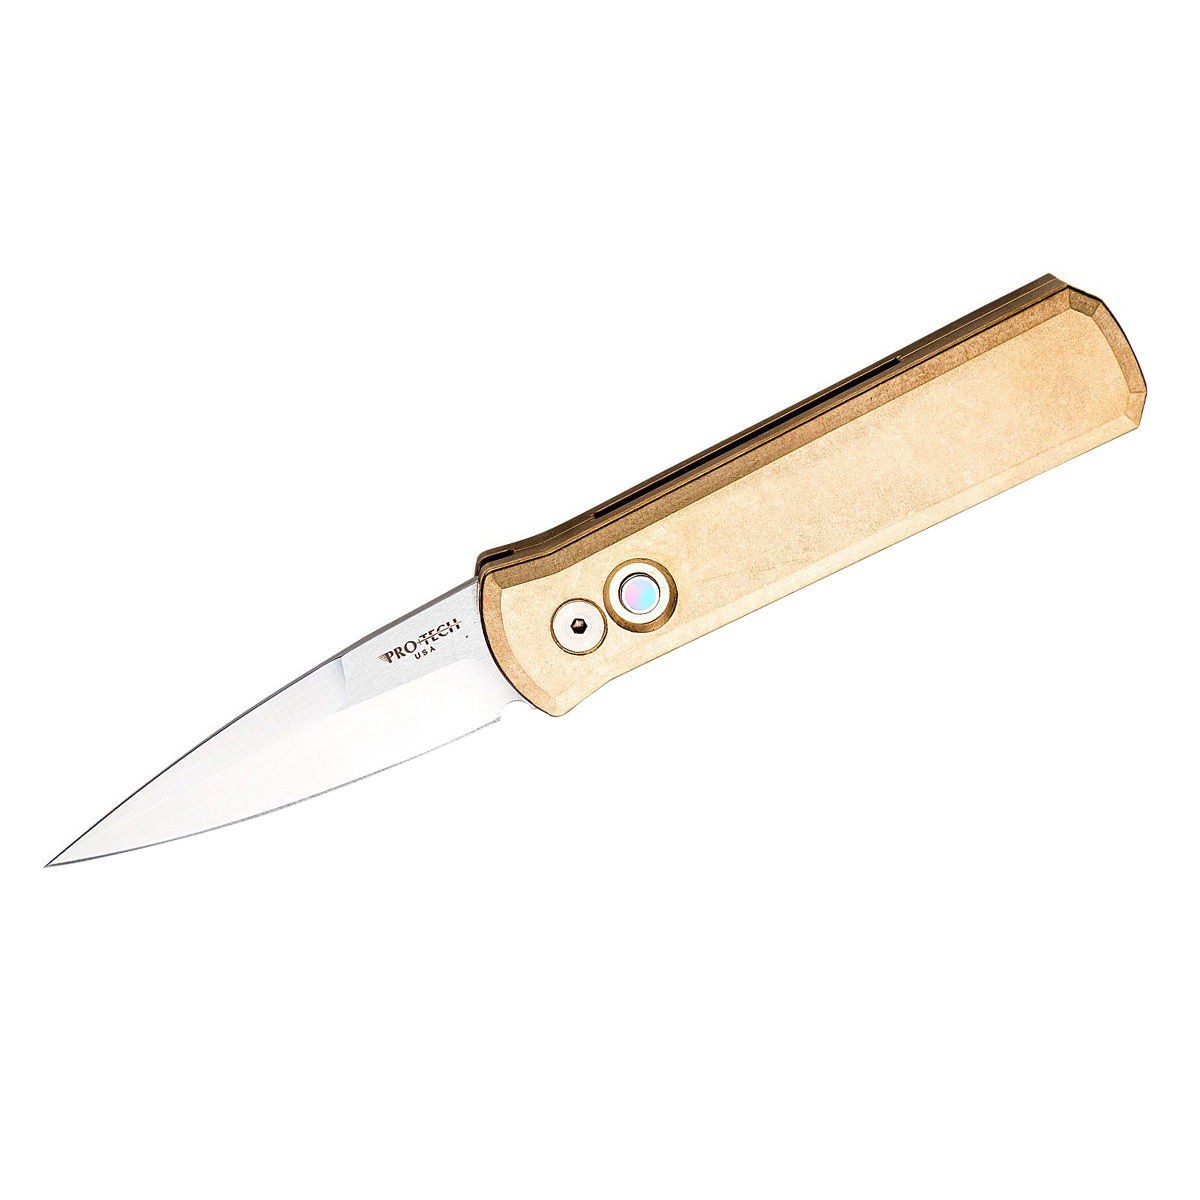 Складной нож Pro-Tech Godson 7110, сталь 154CM, рукоять бронзовый сплав - фото 1